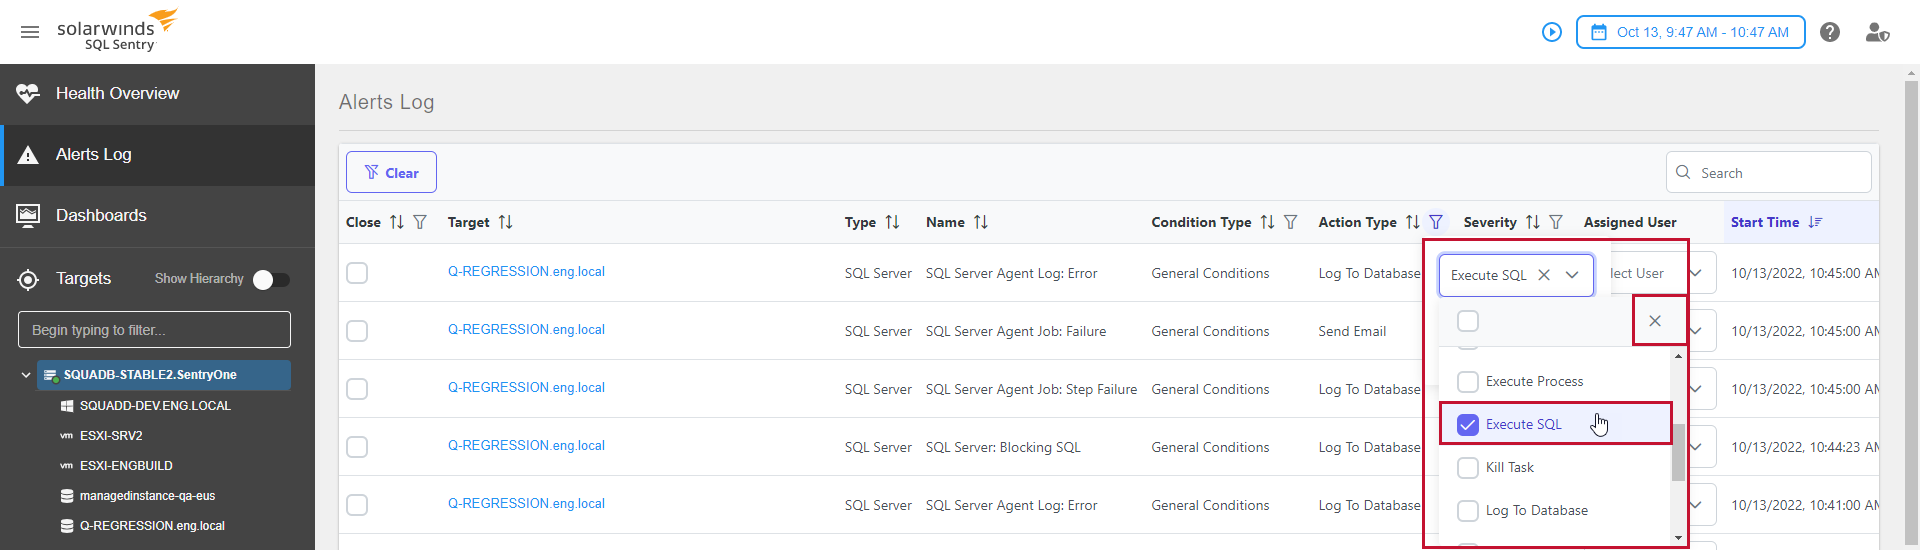 SQL Sentry Portal Alerts Log Filter Options